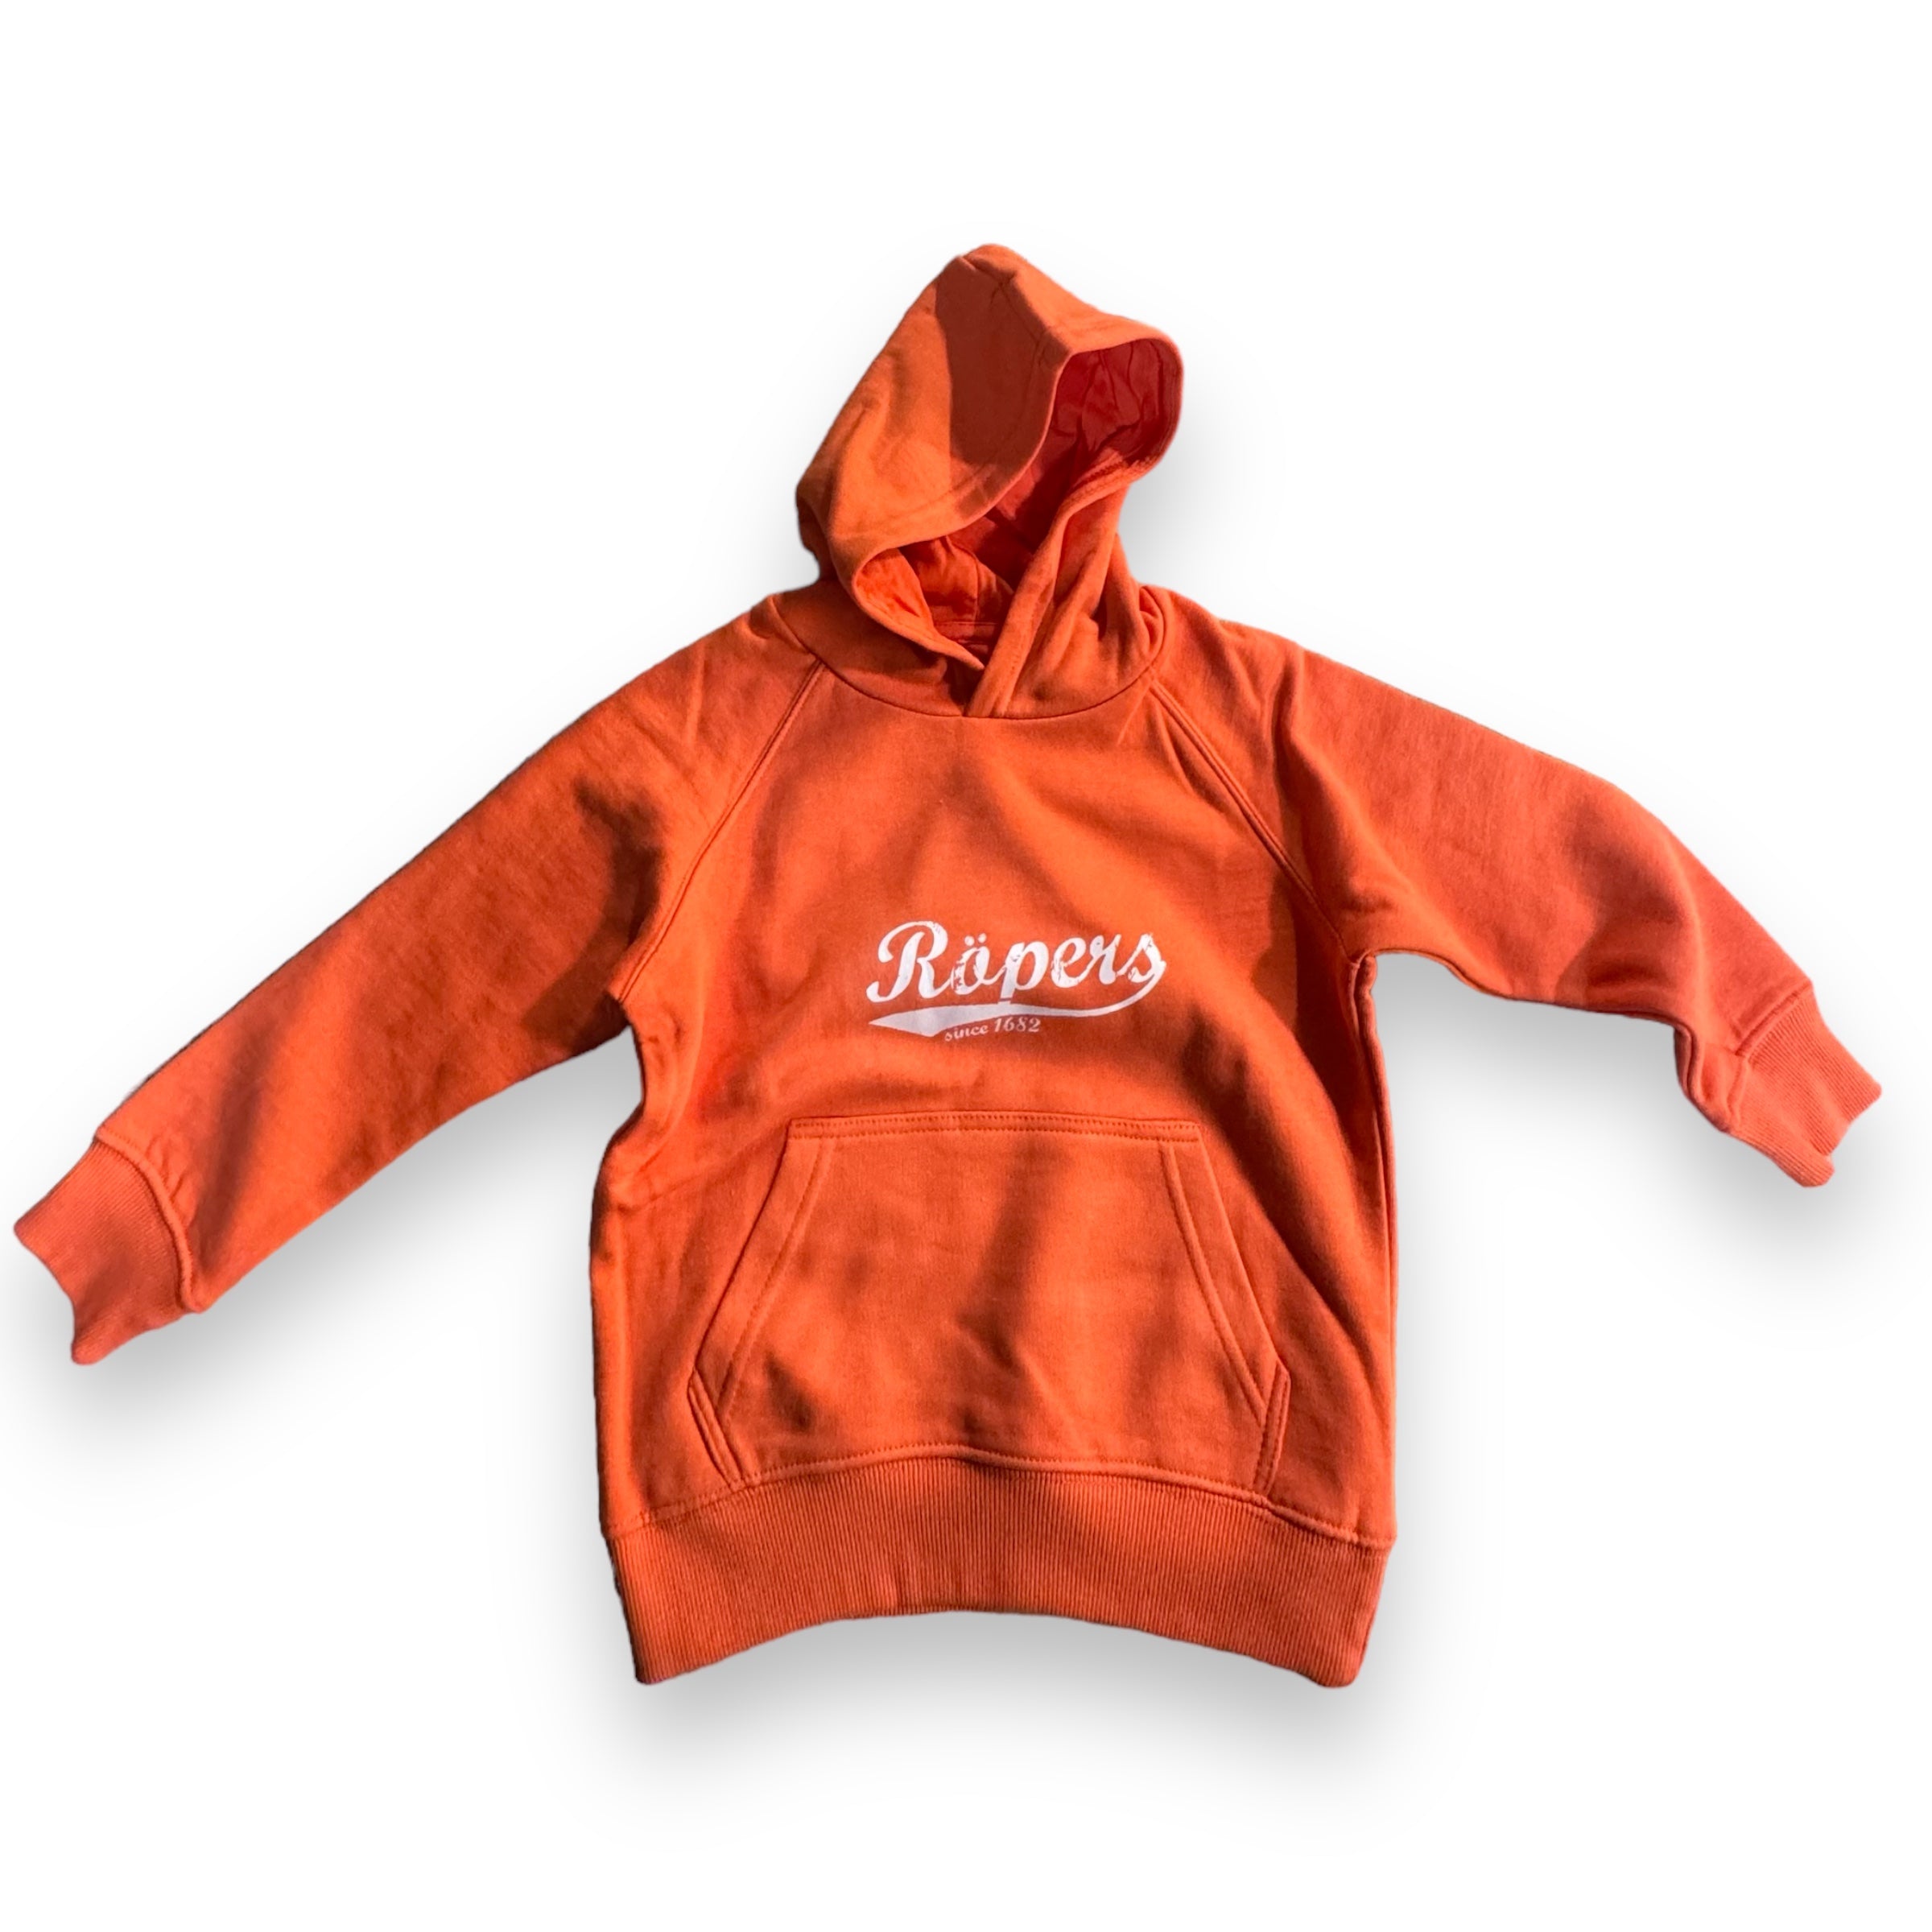 Kinder – Röpers Hoodie Retro Orange Logo